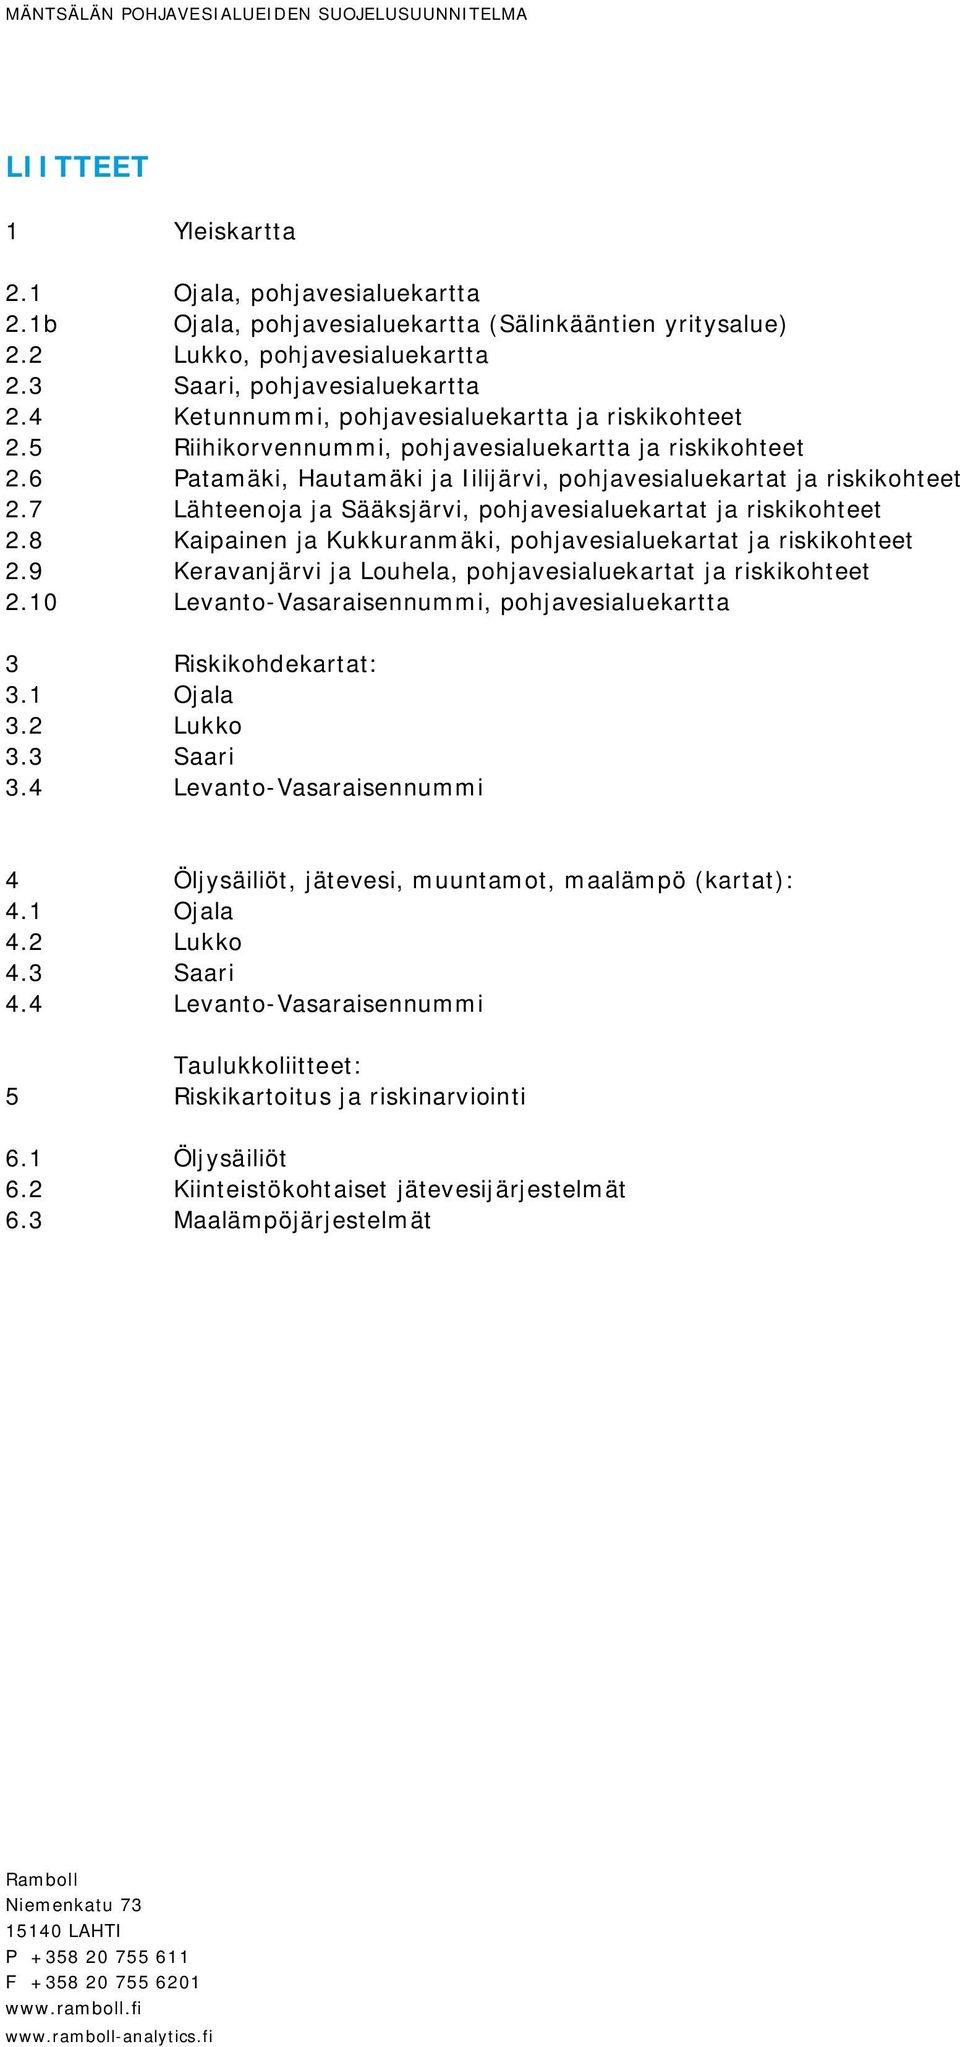 6 Patamäki, Hautamäki ja Iilijärvi, pohjavesialuekartat ja riskikohteet 2.7 Lähteenoja ja Sääksjärvi, pohjavesialuekartat ja riskikohteet 2.